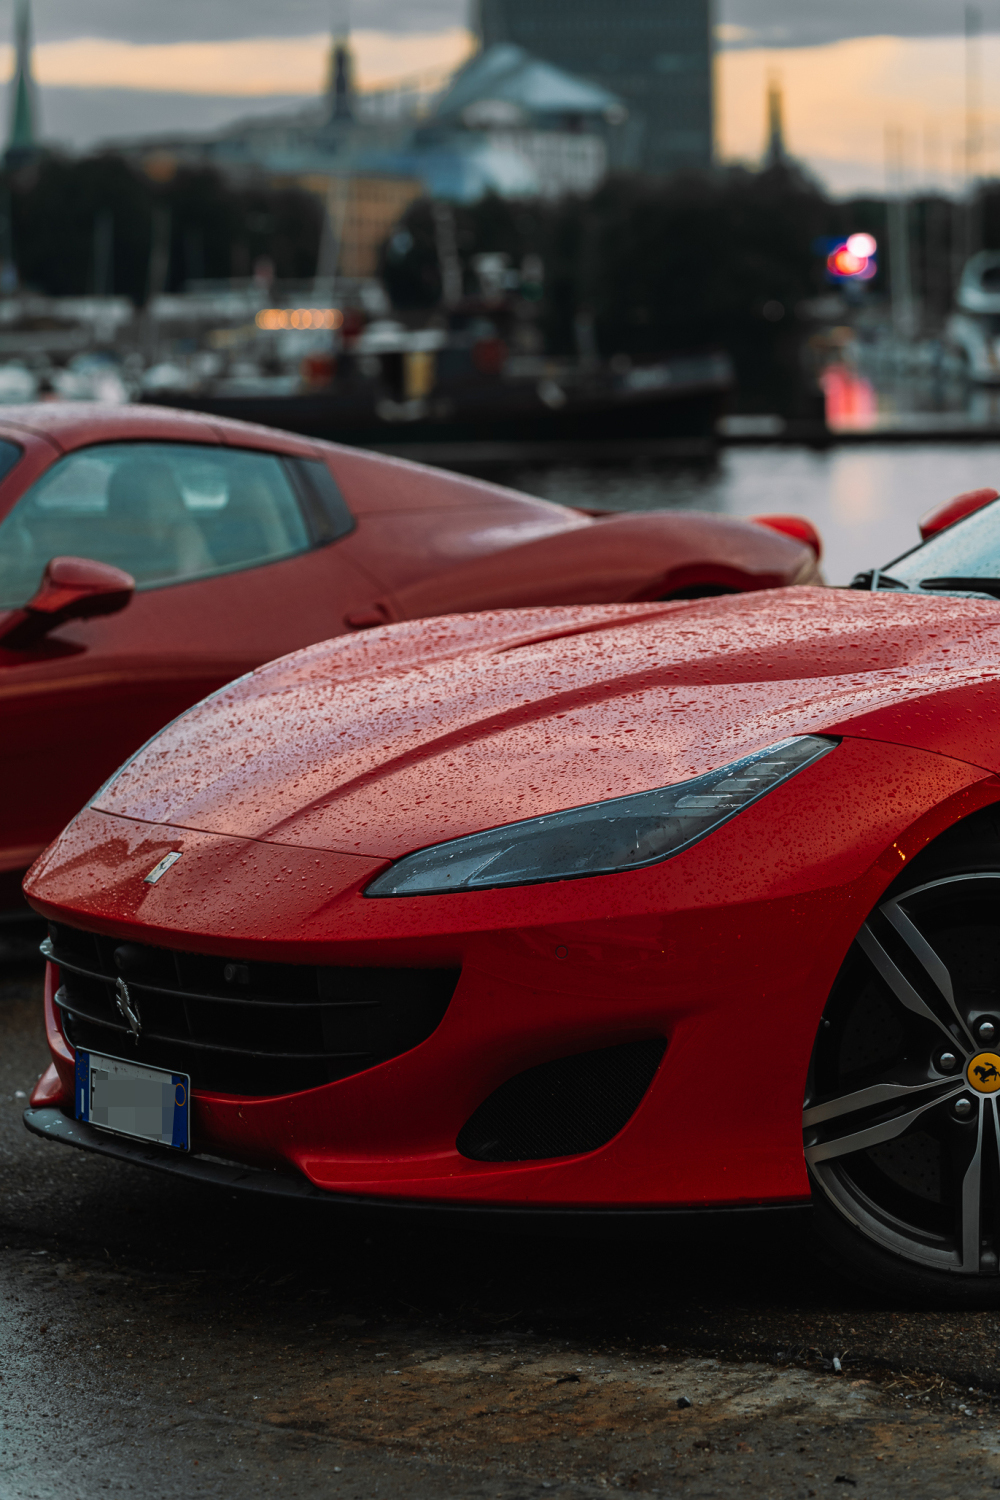 Ferraris parked in front of Koya.